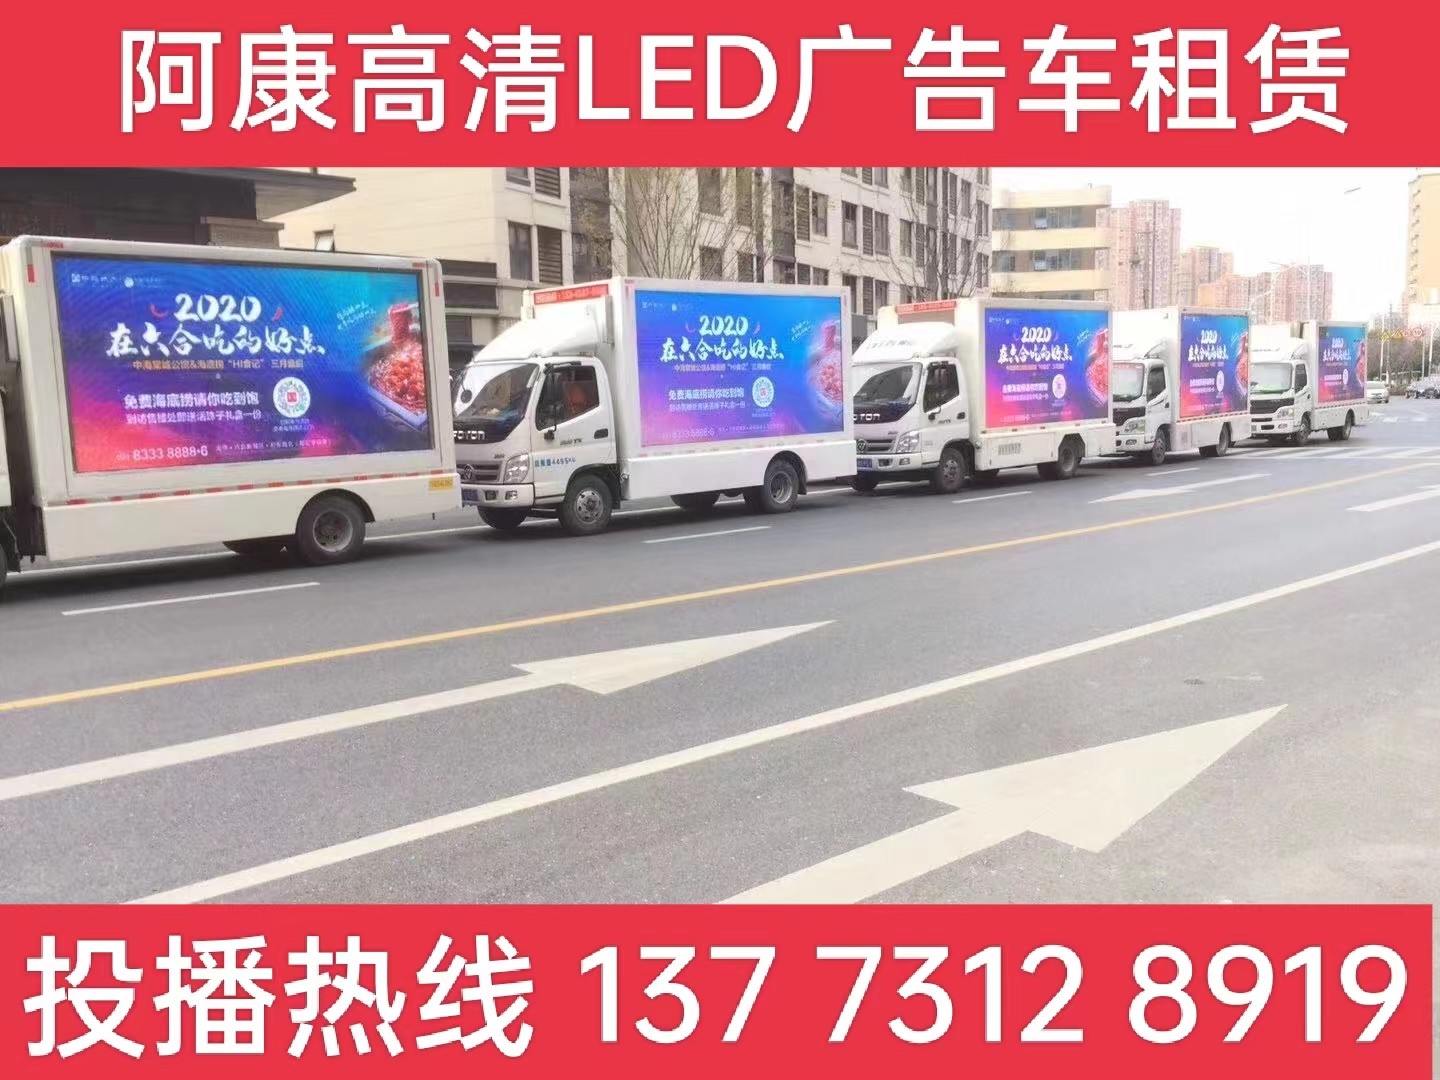 金湖县宣传车出租-海底捞LED广告